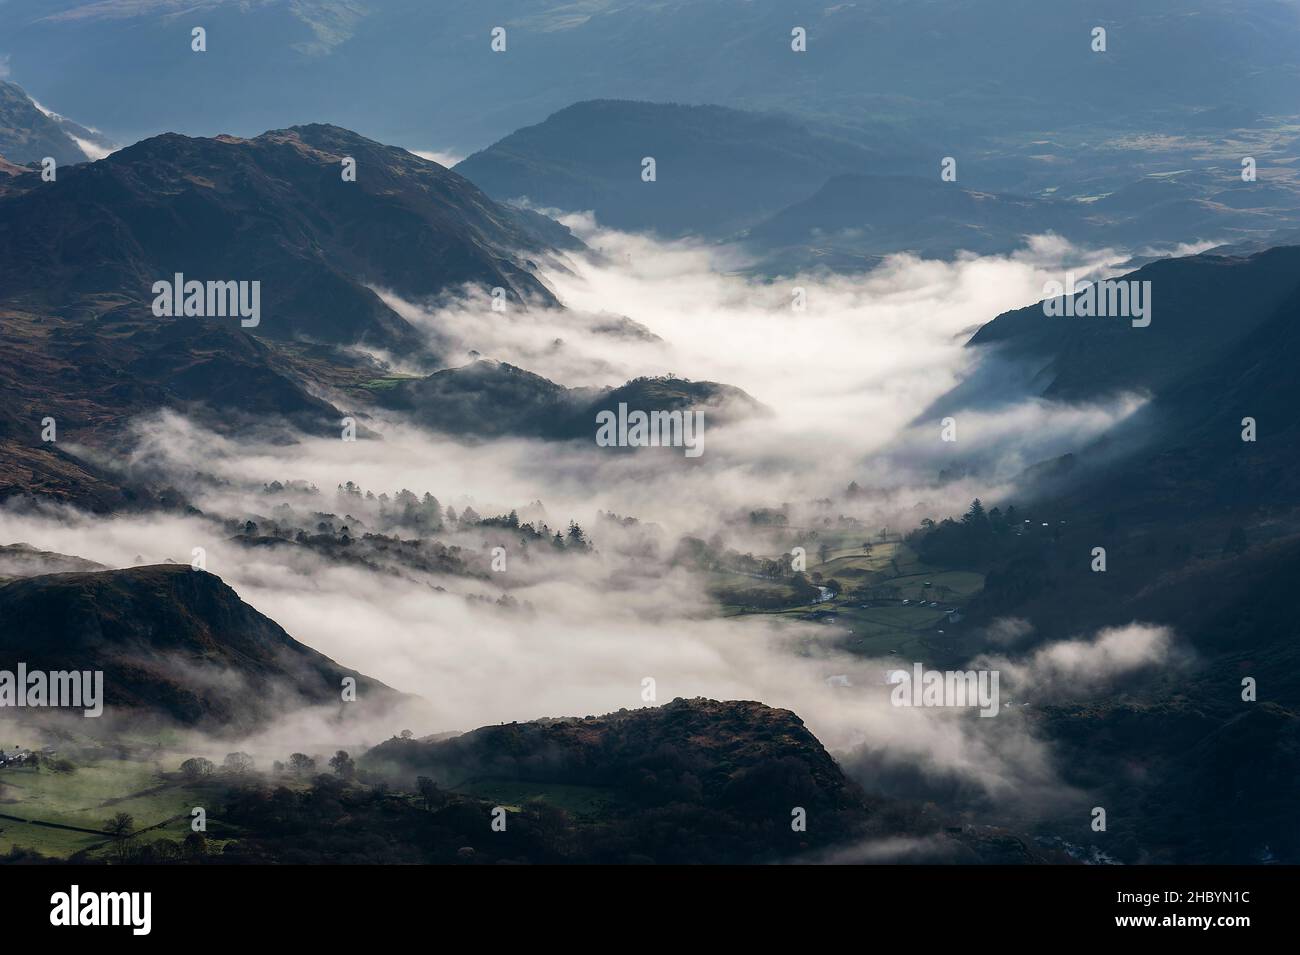 La vallée galloise est entourée de nuages Banque D'Images